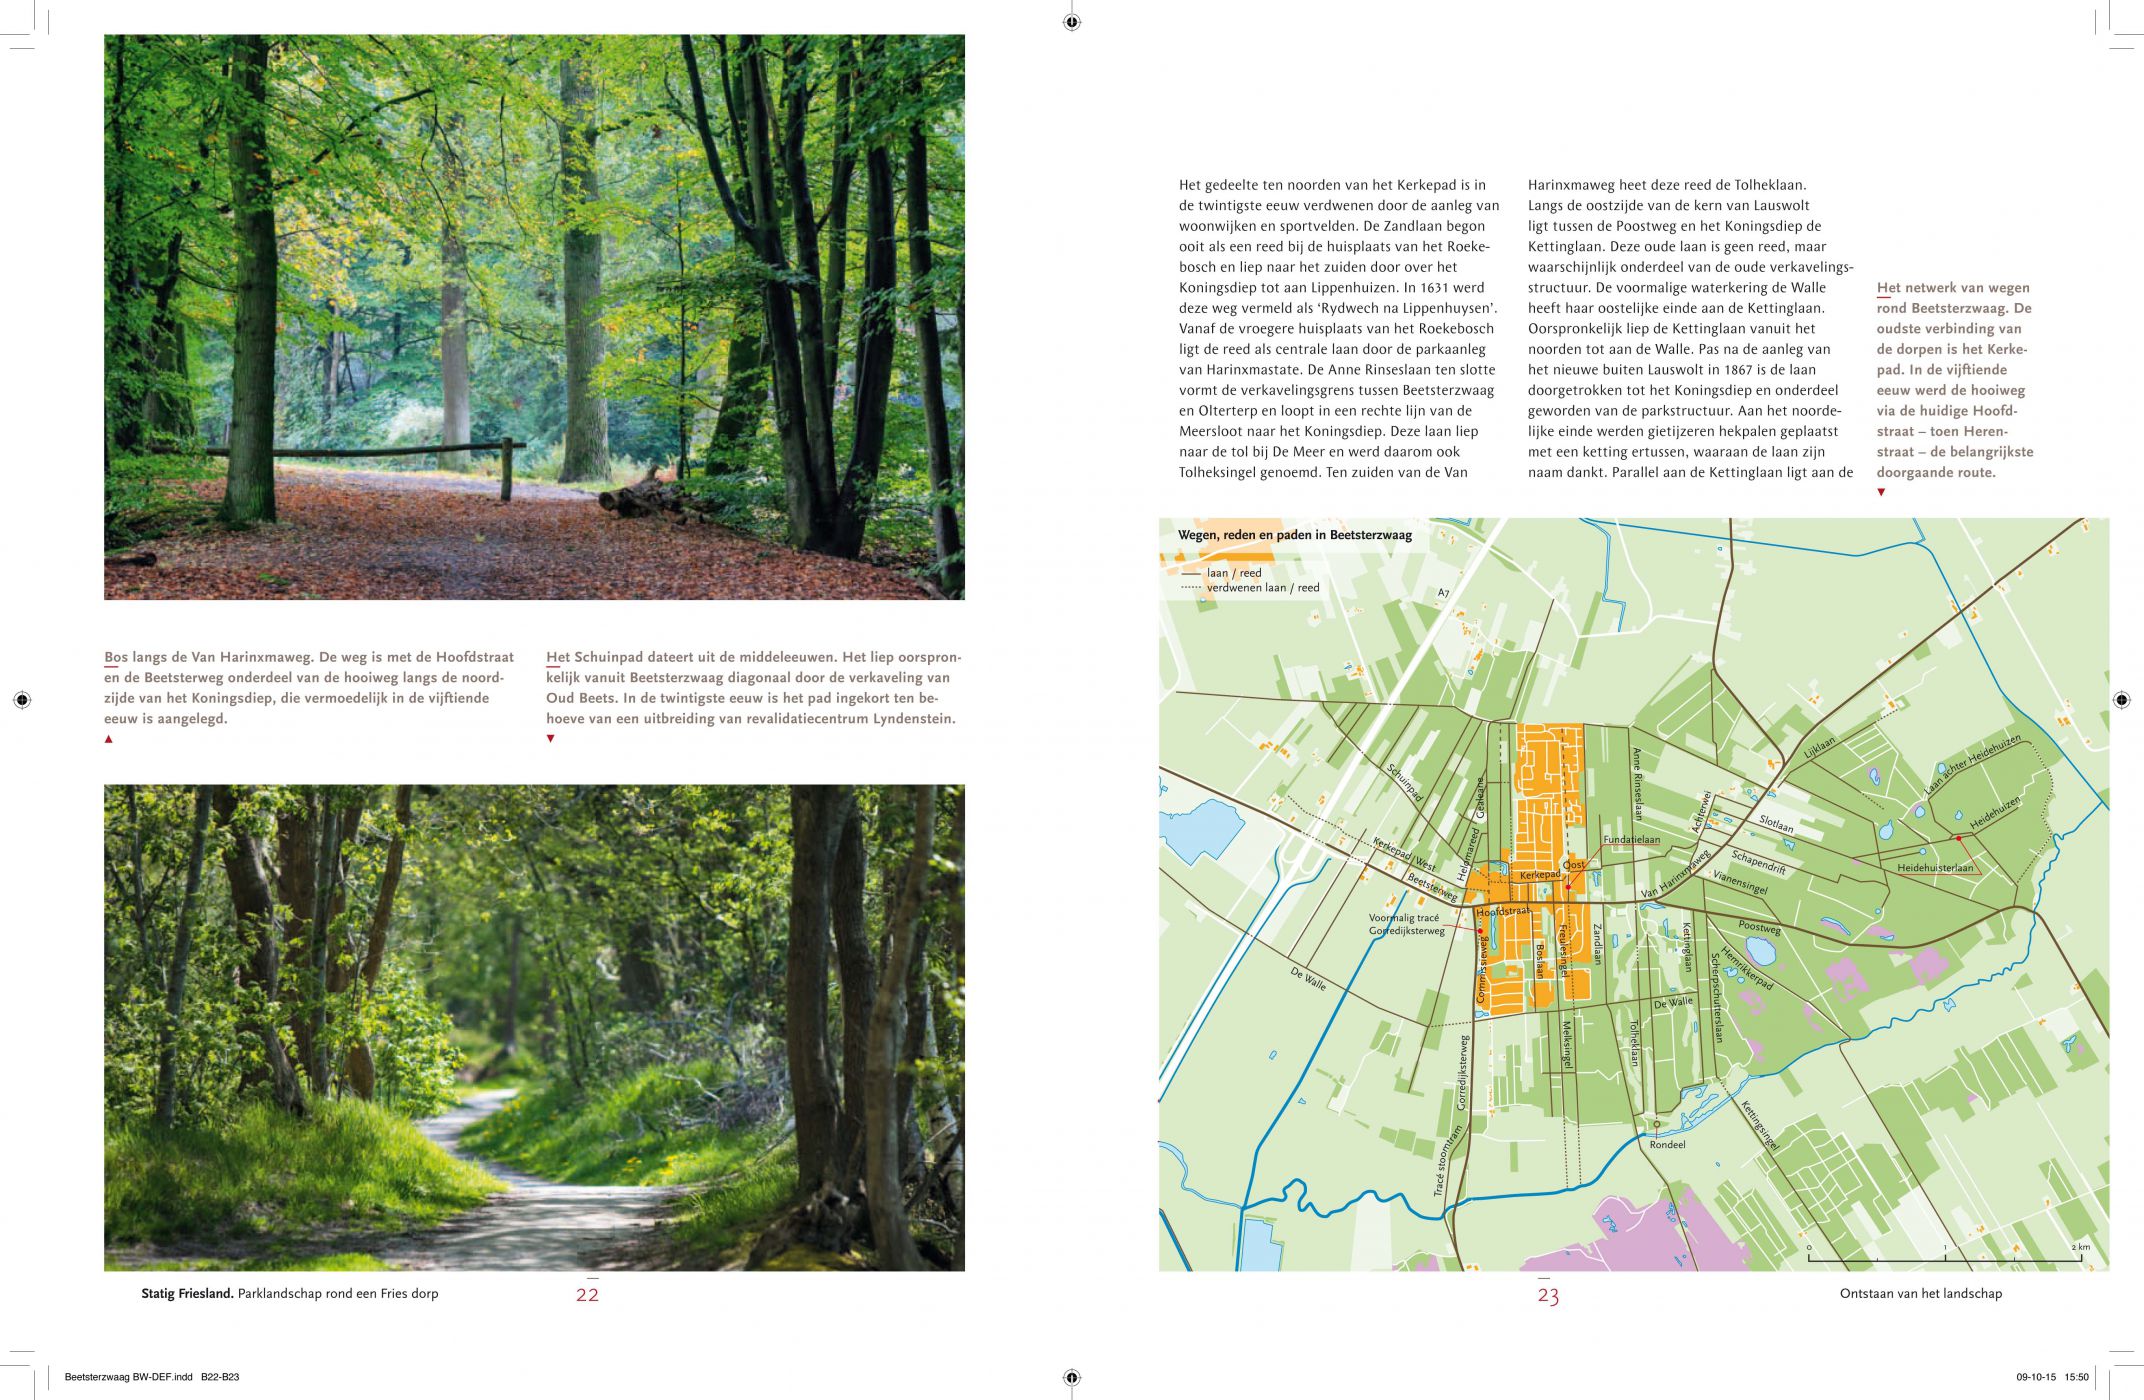 Inkijkexemplaar van het boek: <em>Statig Beetsterzwaag. Parklandschap rond een Fries dorp</em> - © Uitgeverij Matrijs